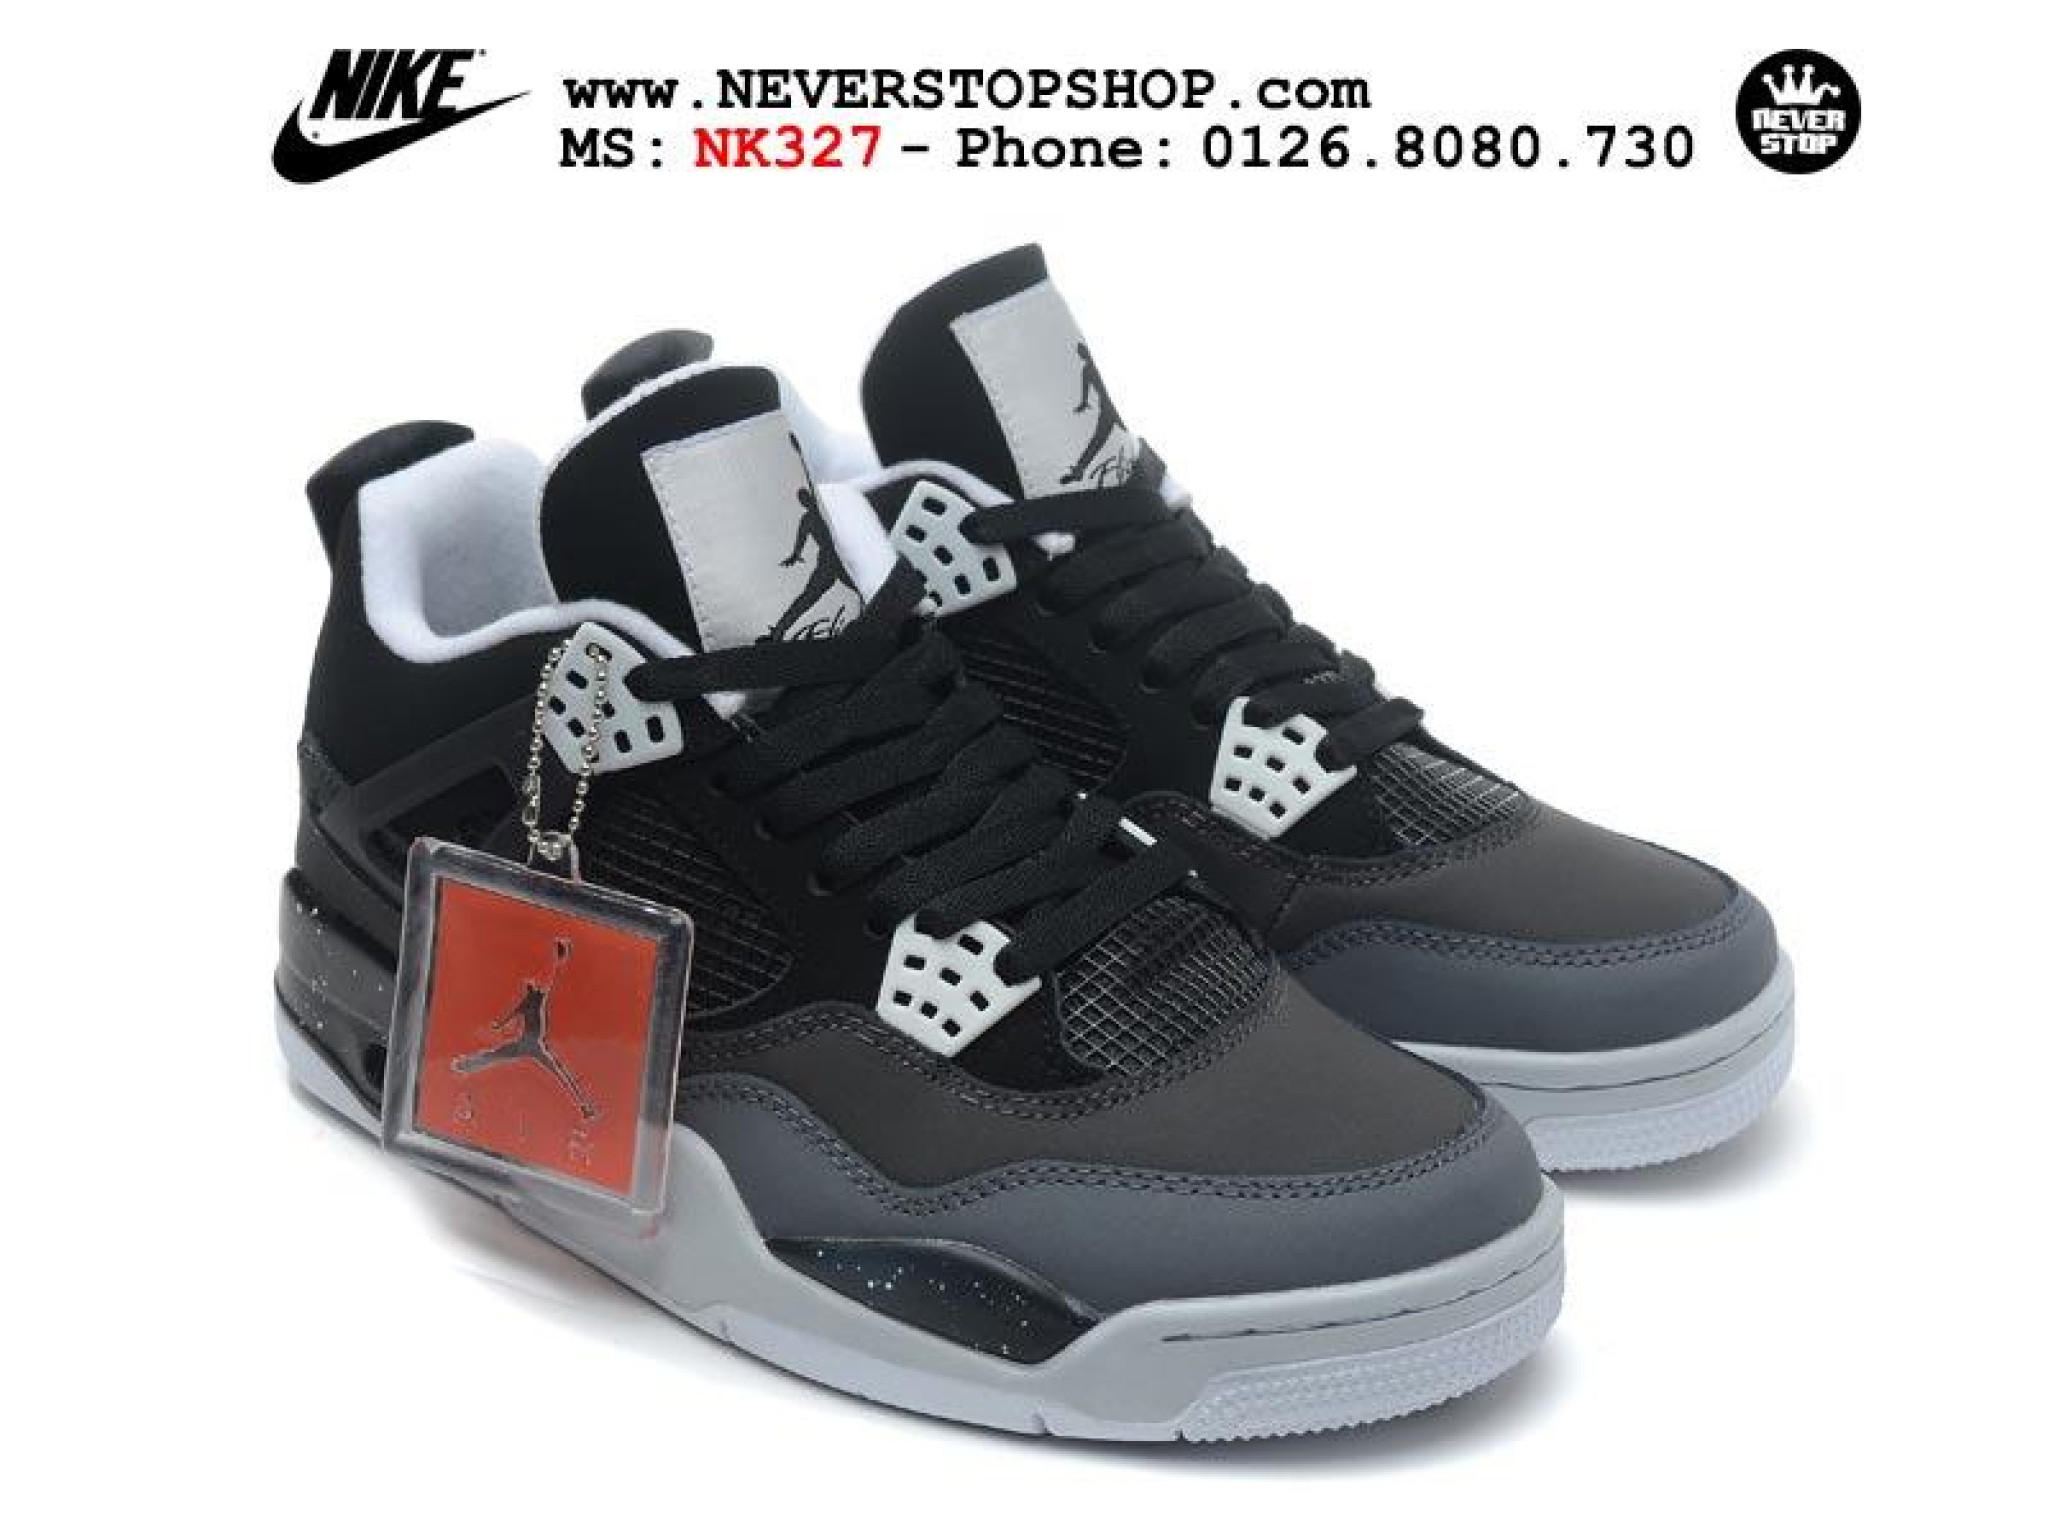 Nike air jordan 4 fear. Nike Air Jordan 4 Black. Nike Air Jordan 4. Nike Air Jordan 4 Retro. Nike Air Jordan 4 Blak.